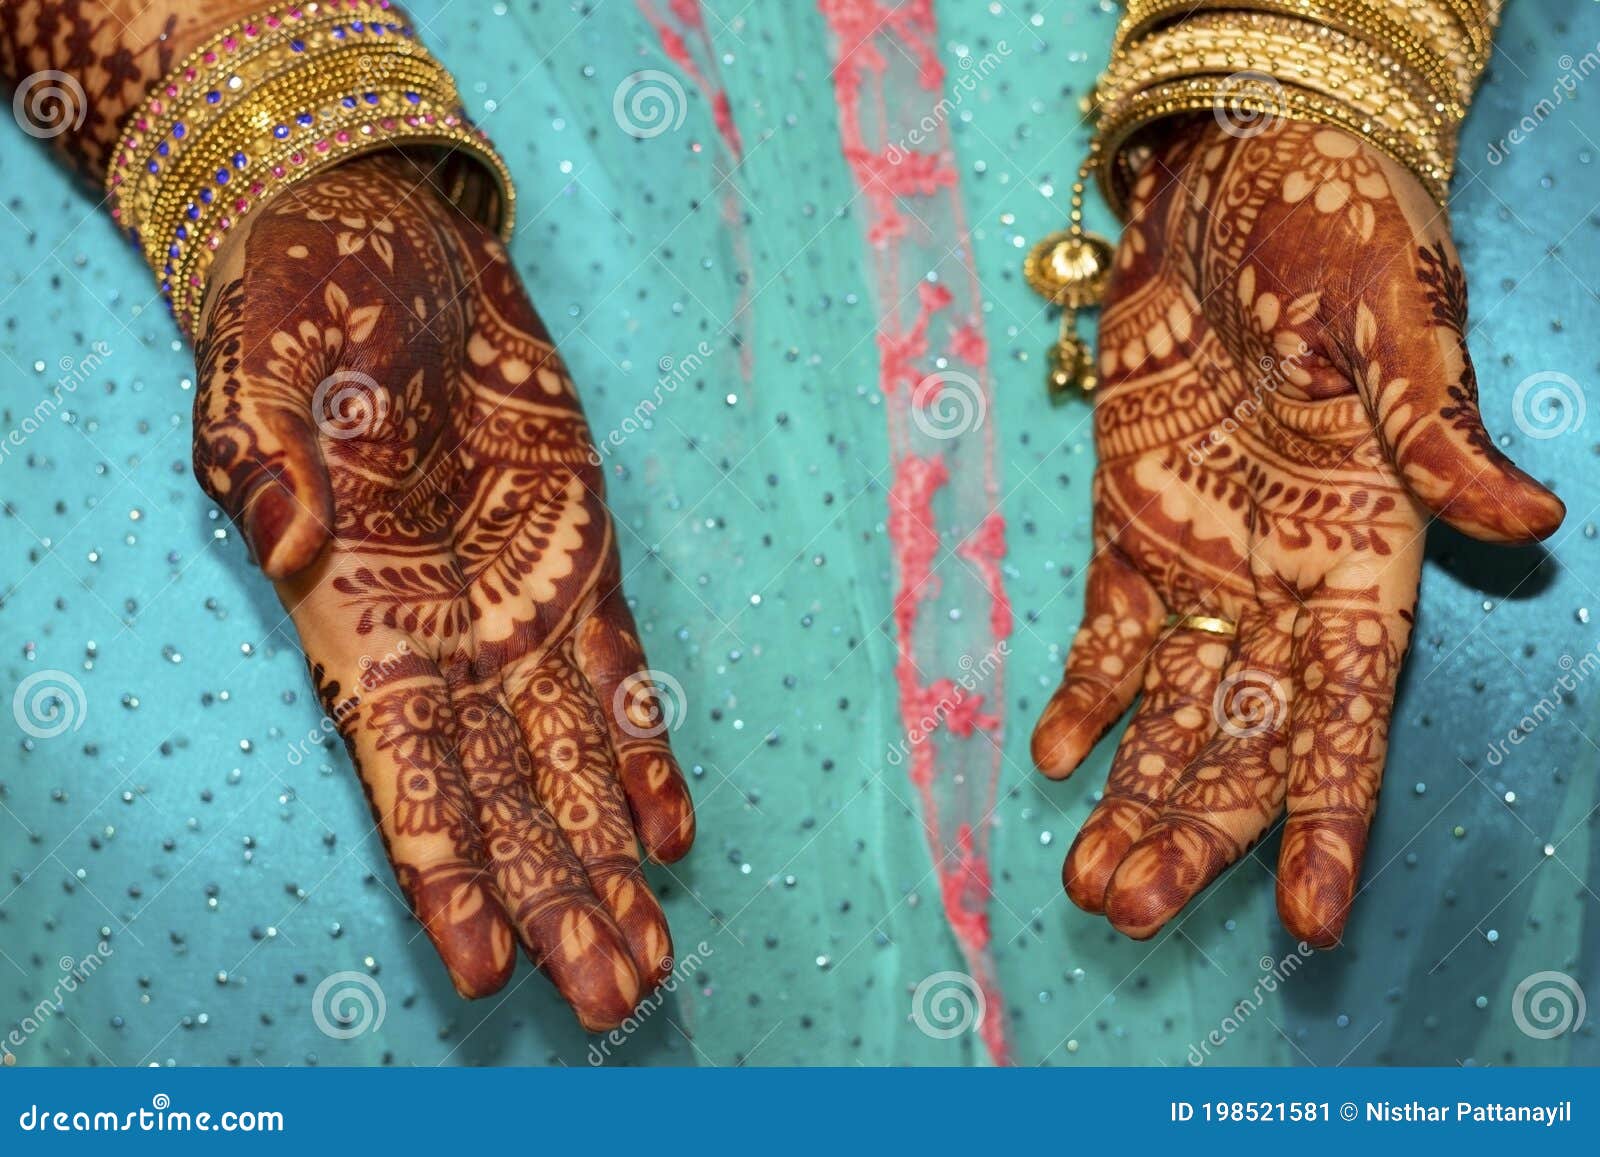 Bridal Makeup - Mehandi Design Stock Image - Image of henna ...